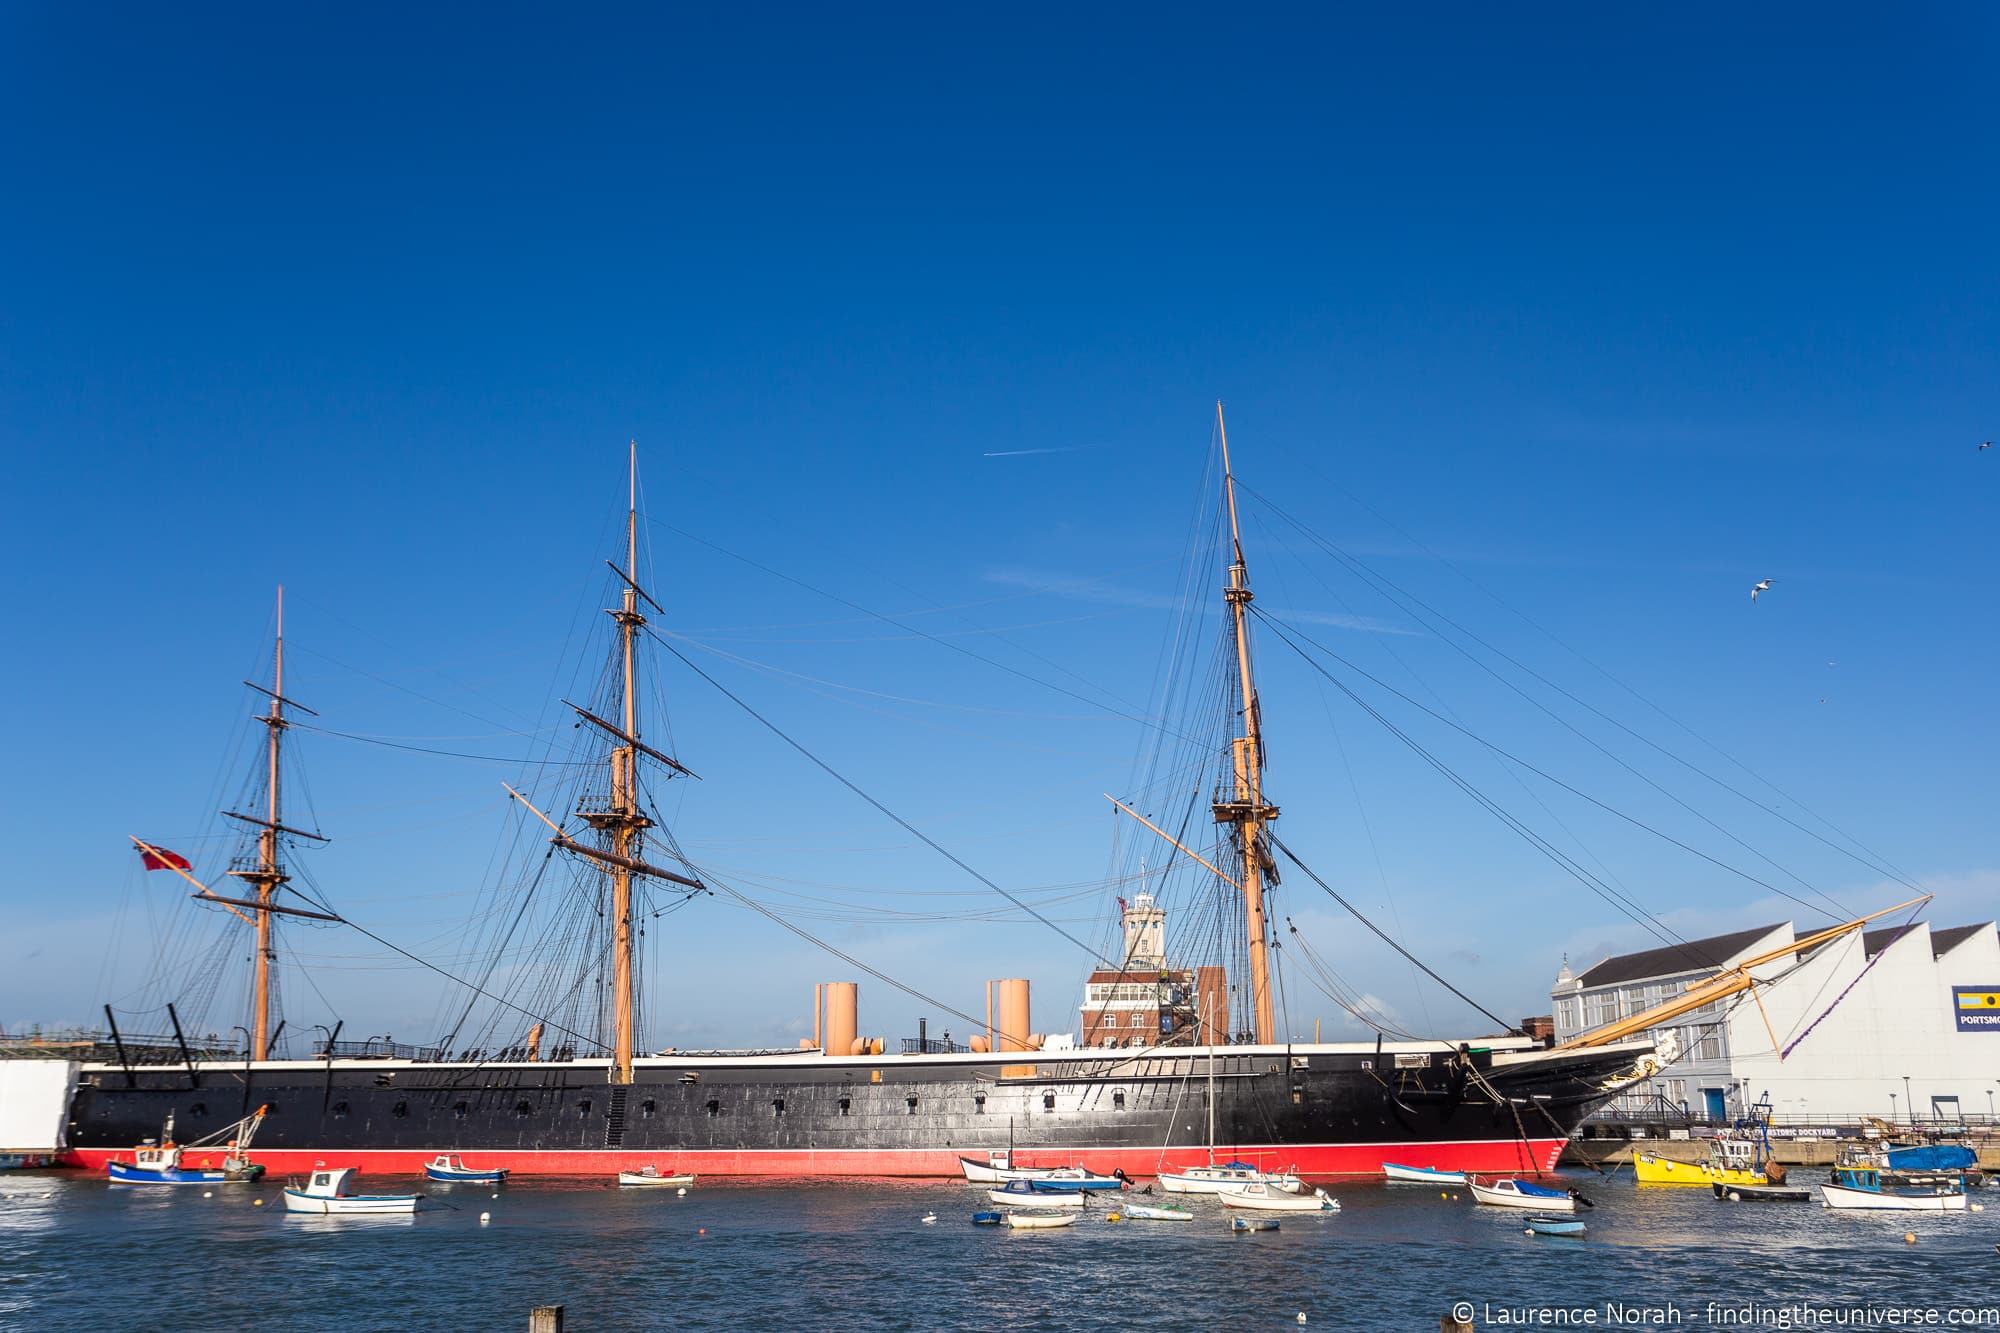 HMS Warrior Portsmouth